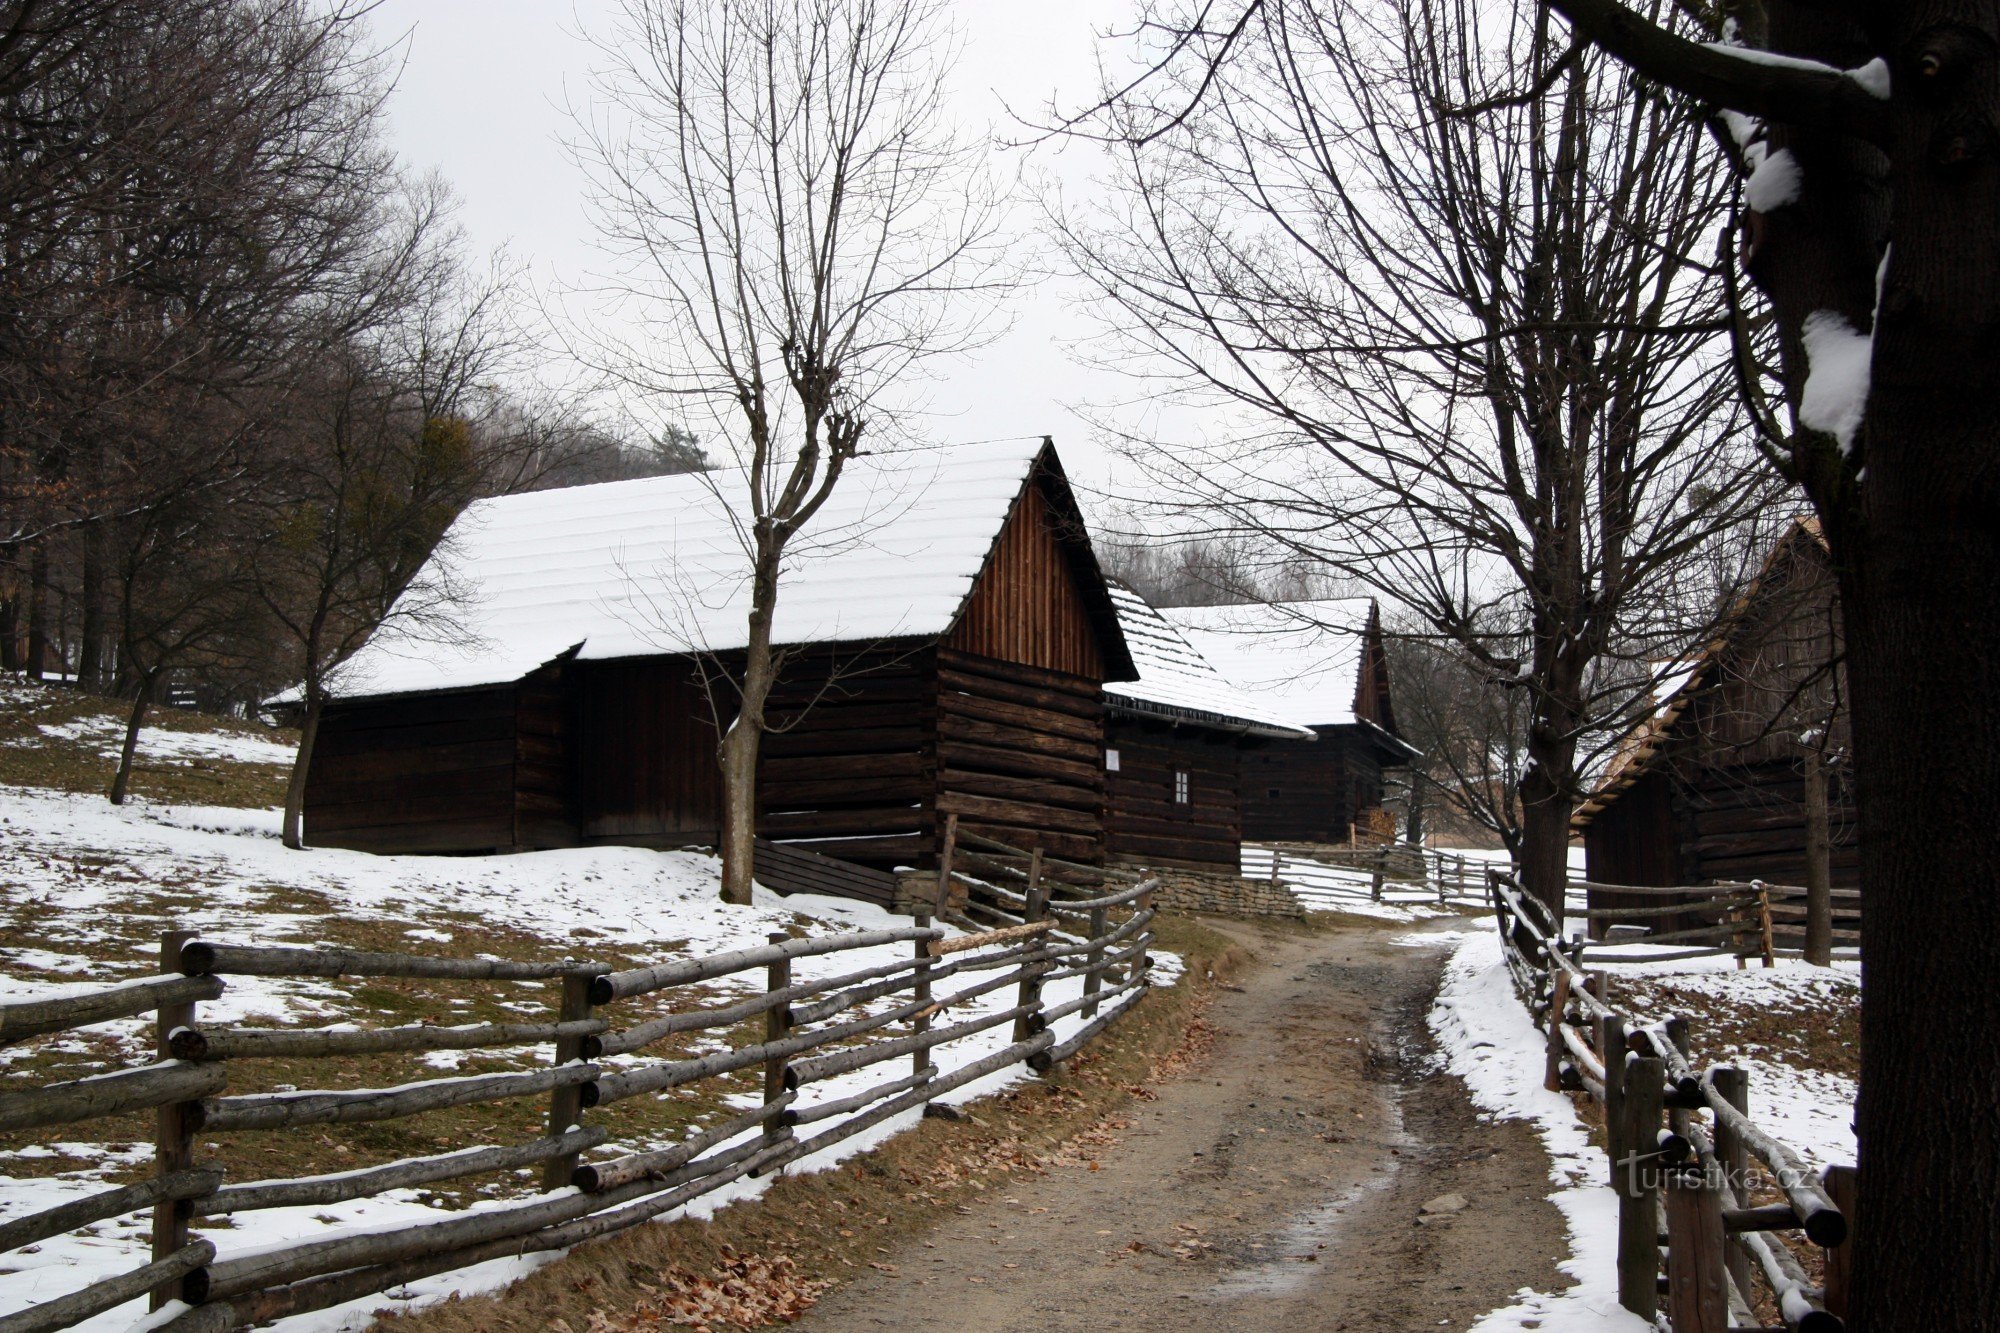 Χειμερινή βόλτα στο υπαίθριο μουσείο στο Rožnov + Από το Pusteven στο Rodhošť